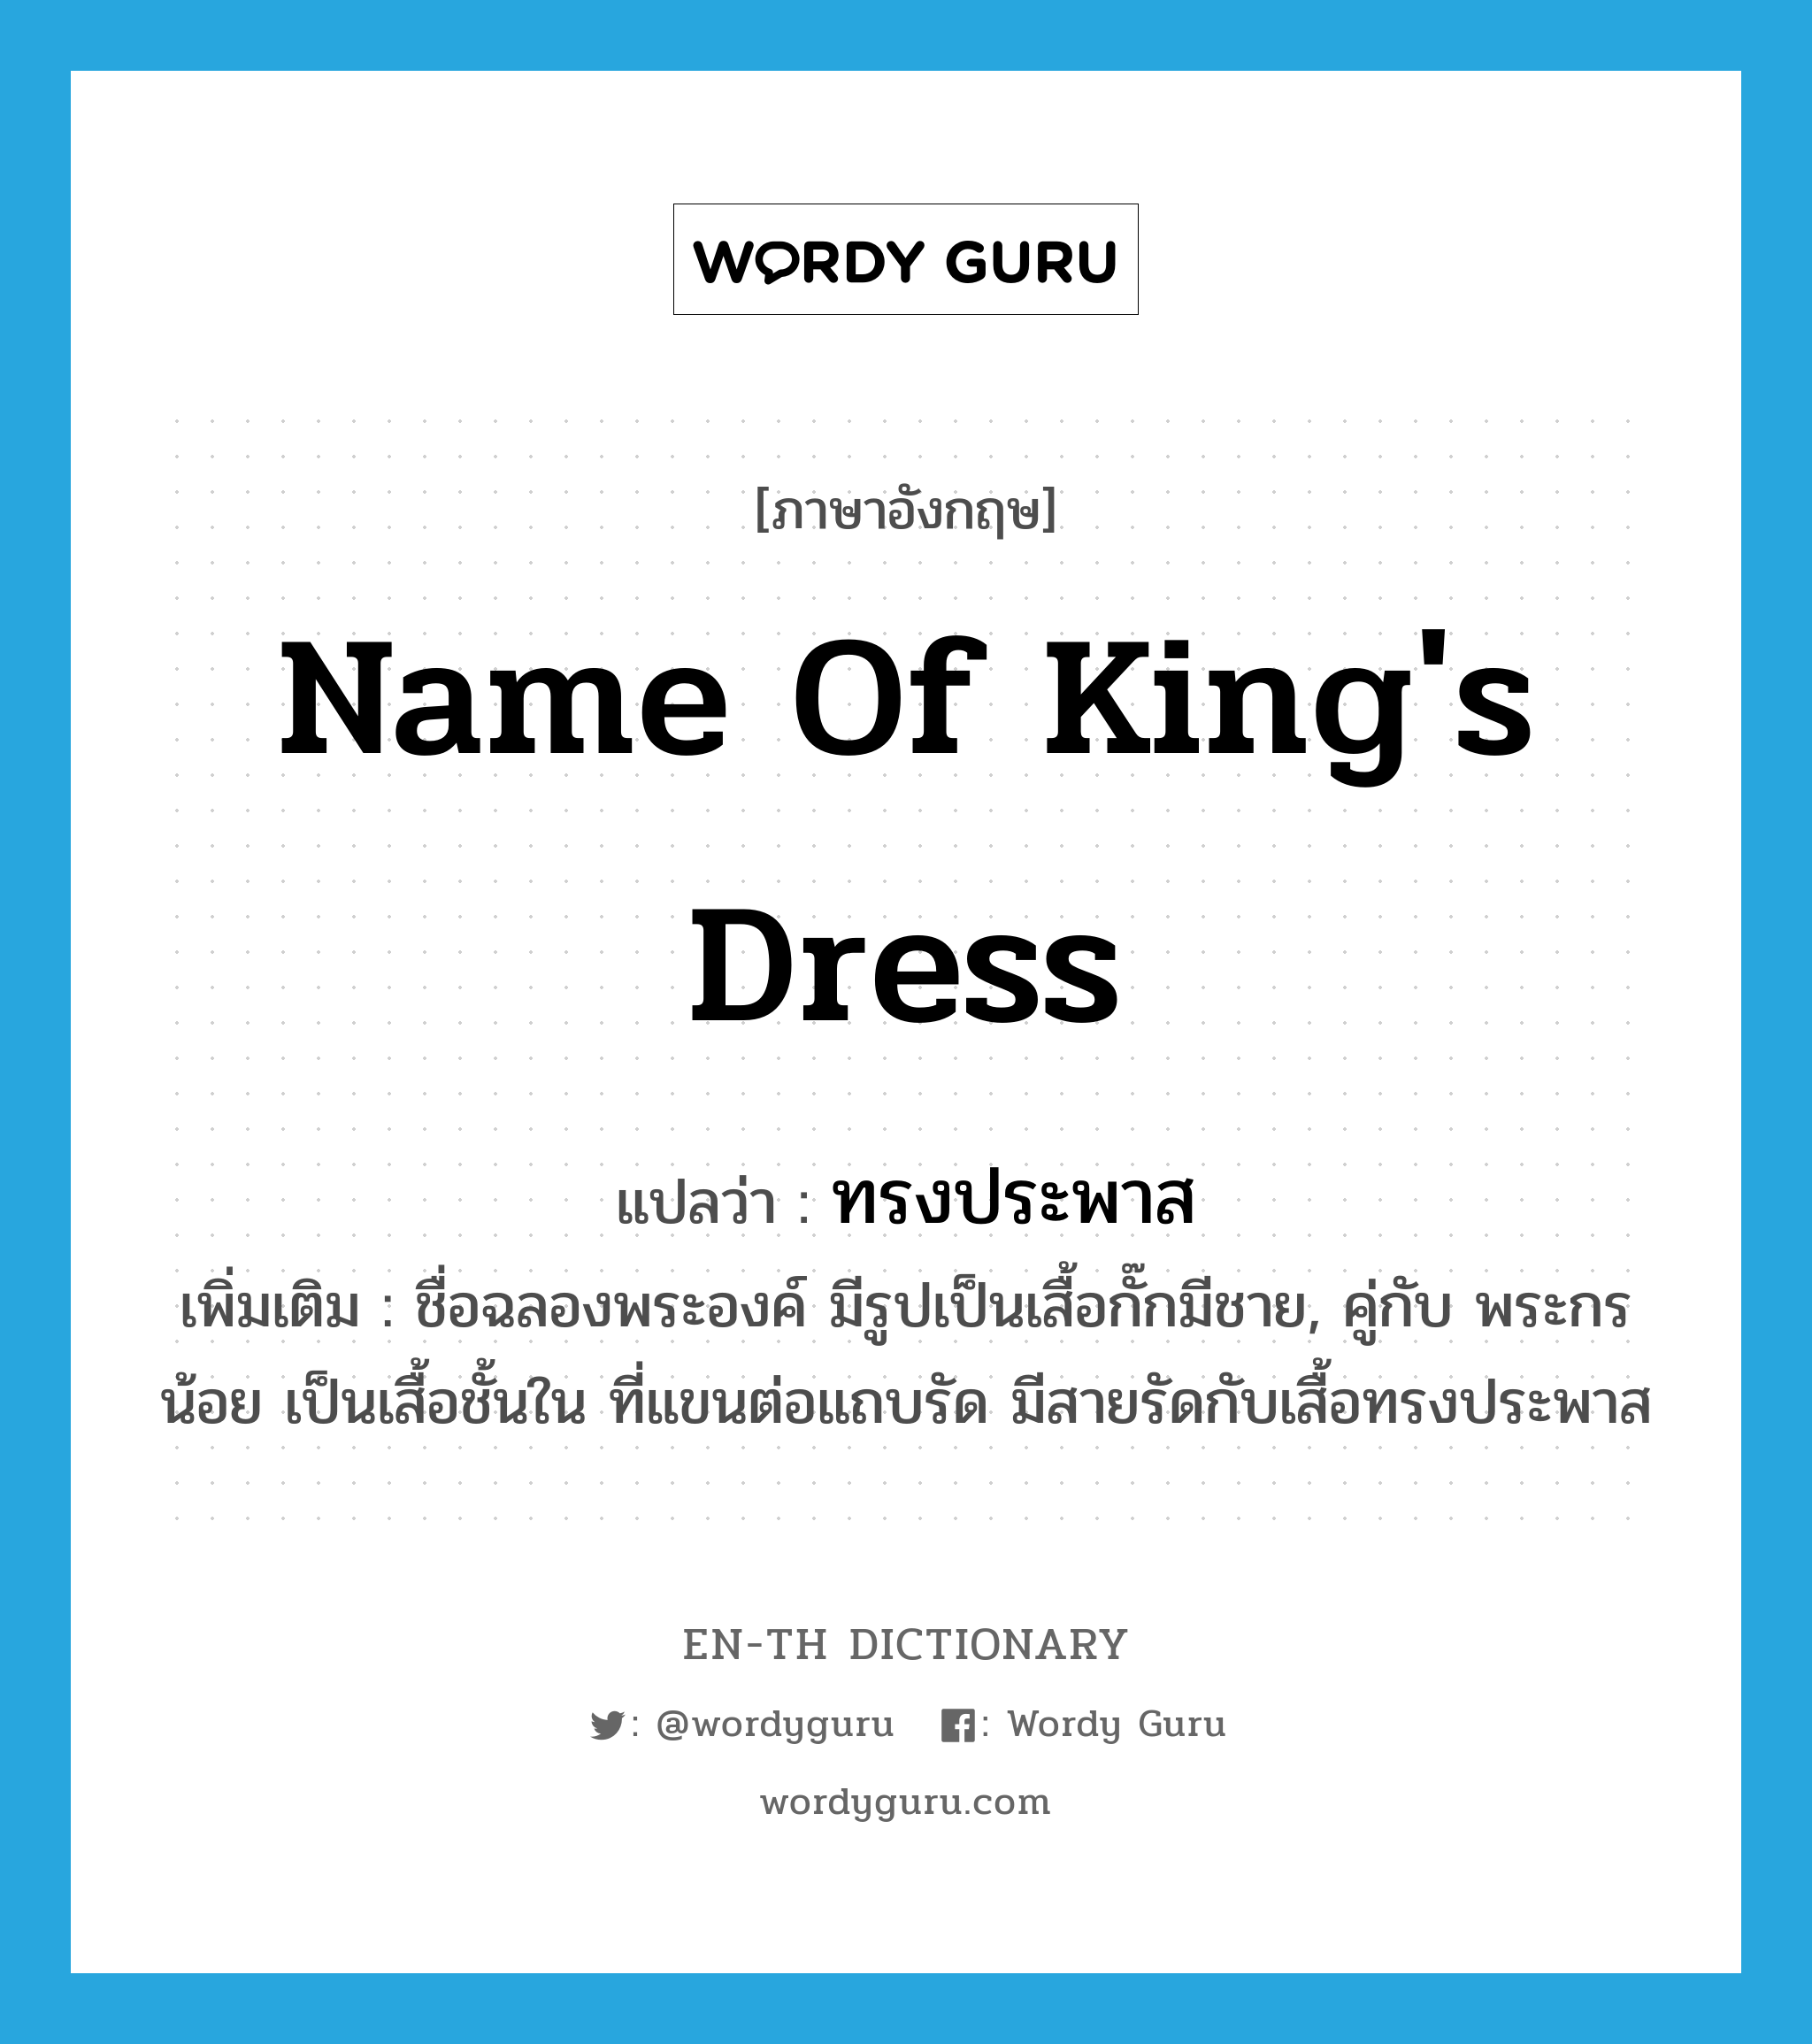 ทรงประพาส ภาษาอังกฤษ?, คำศัพท์ภาษาอังกฤษ ทรงประพาส แปลว่า name of king's dress ประเภท N เพิ่มเติม ชื่อฉลองพระองค์ มีรูปเป็นเสื้อกั๊กมีชาย, คู่กับ พระกรน้อย เป็นเสื้อชั้นใน ที่แขนต่อแถบรัด มีสายรัดกับเสื้อทรงประพาส หมวด N